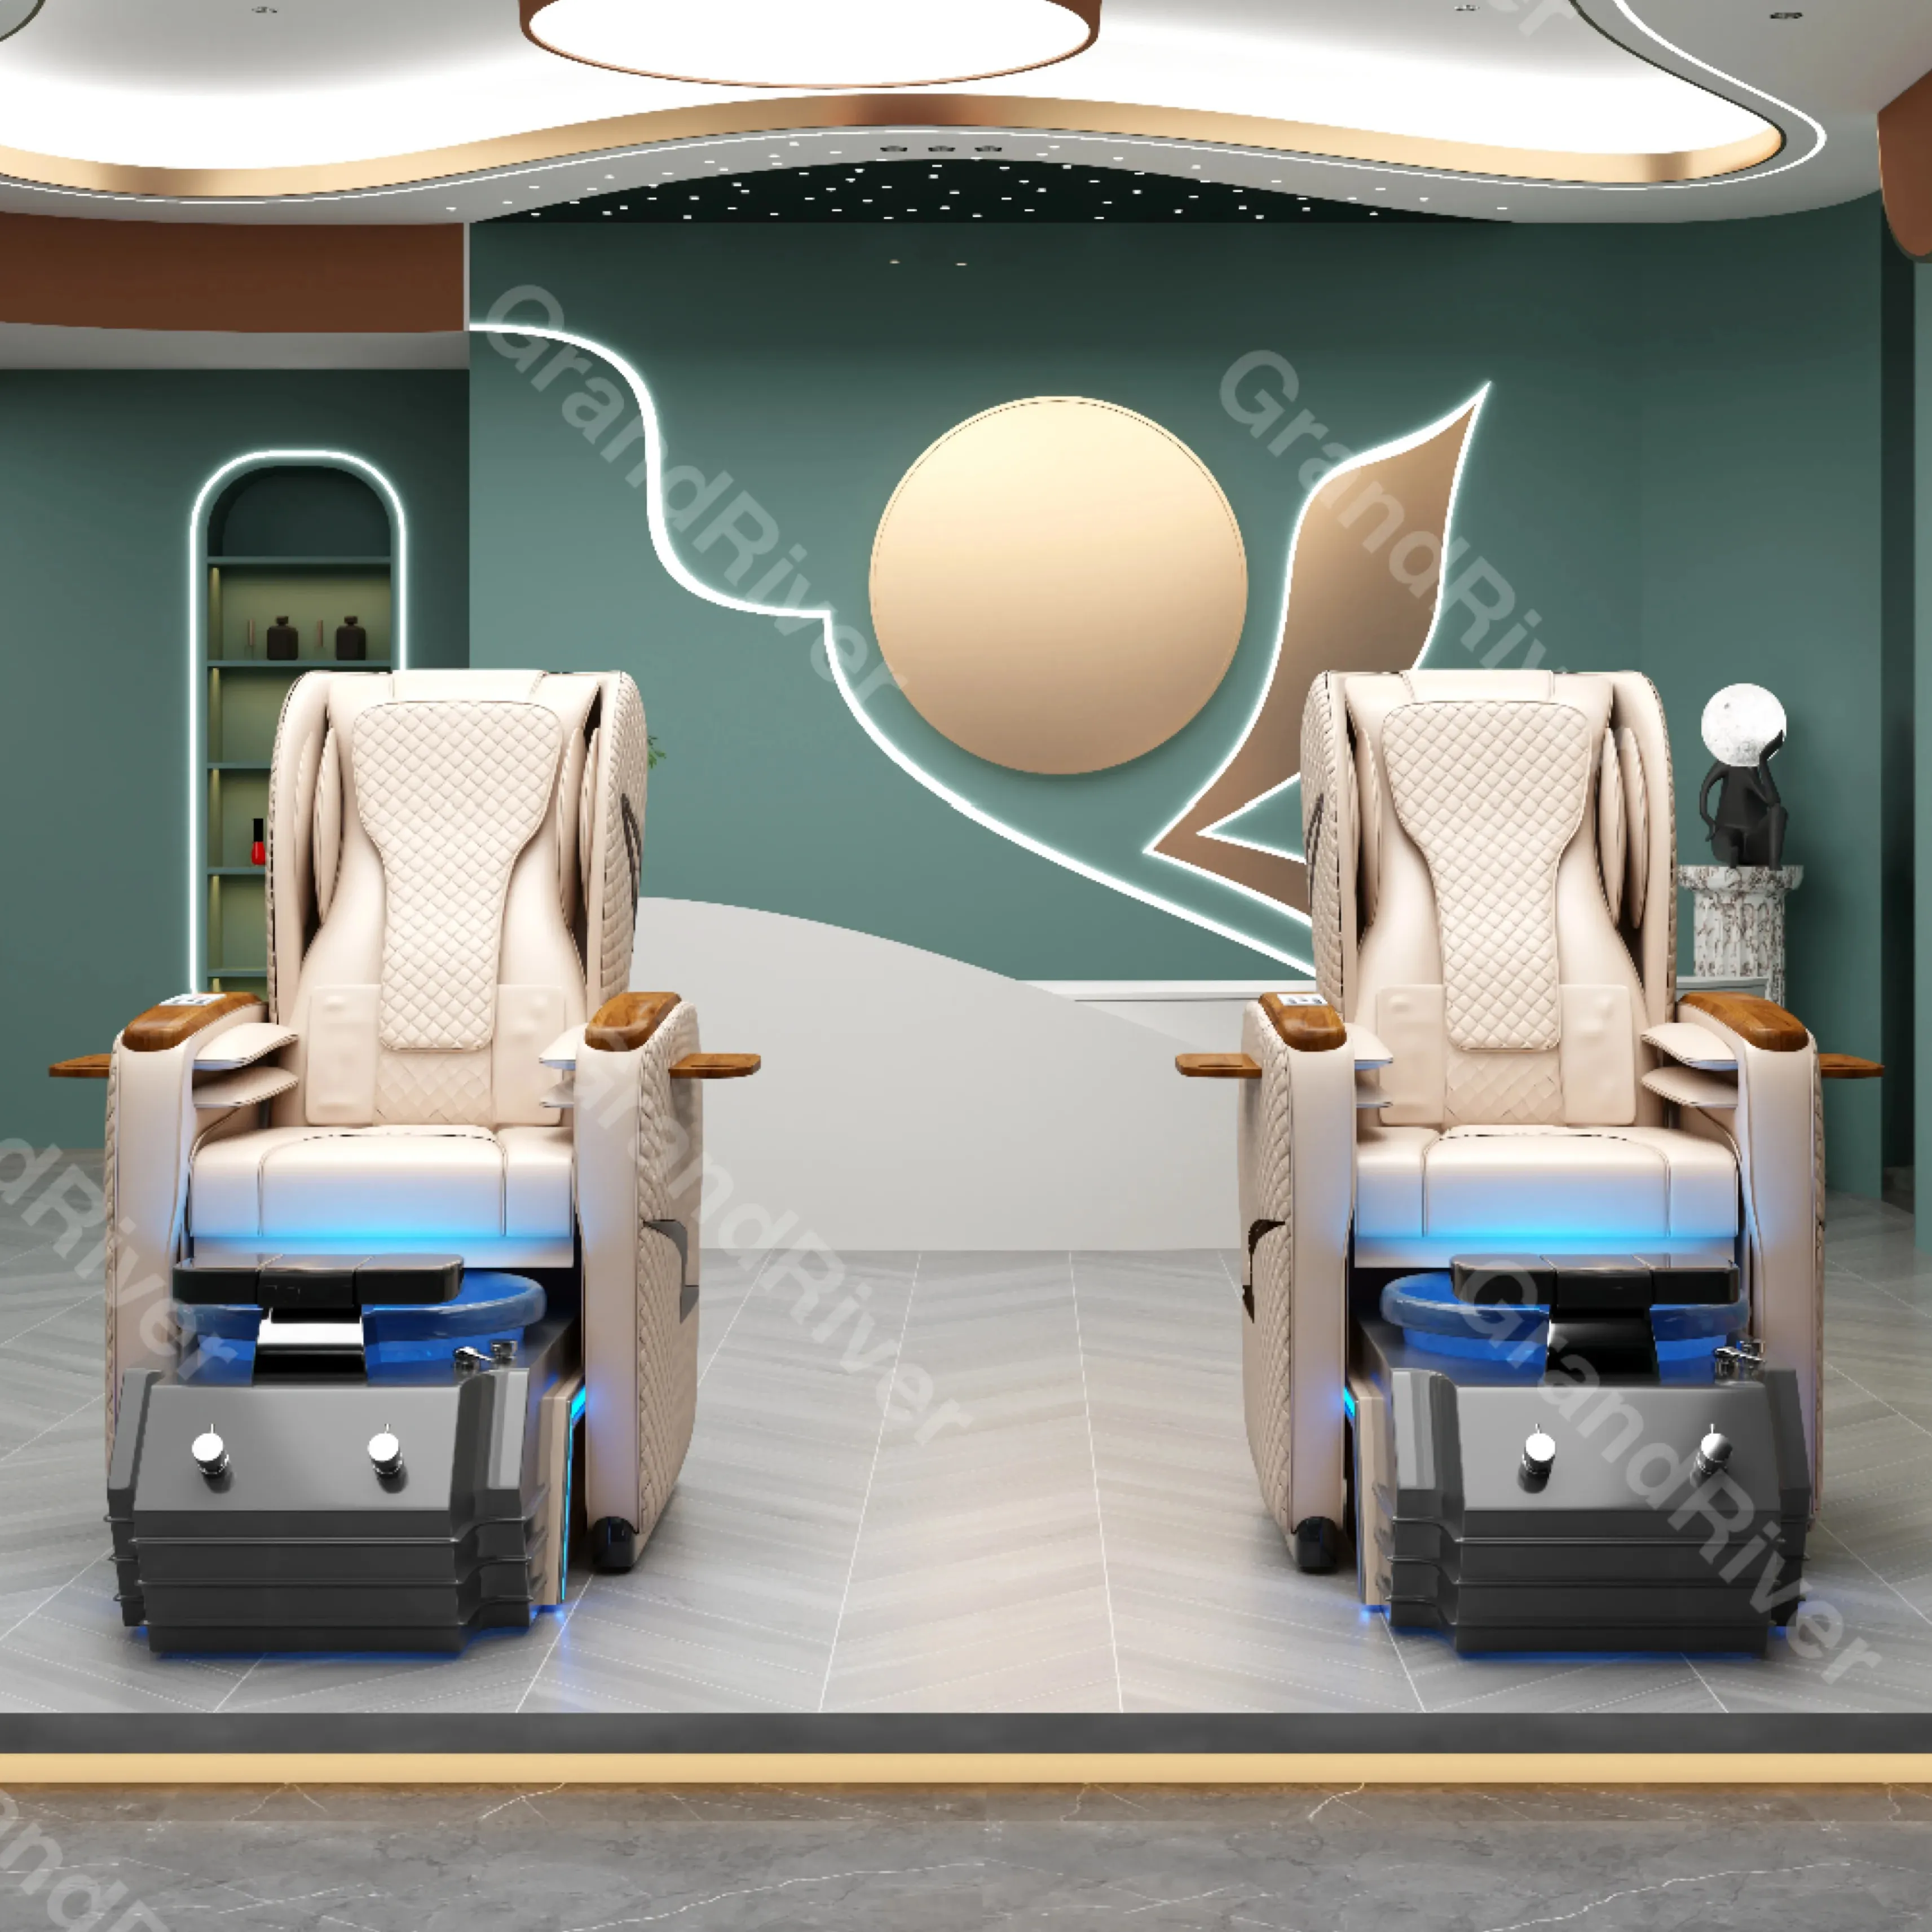 Chaise de pédicure électrique de style royal de luxe moderne à prix d'usine Massage des mains humaines et spa pour les pieds pour la manucure de salon de beauté